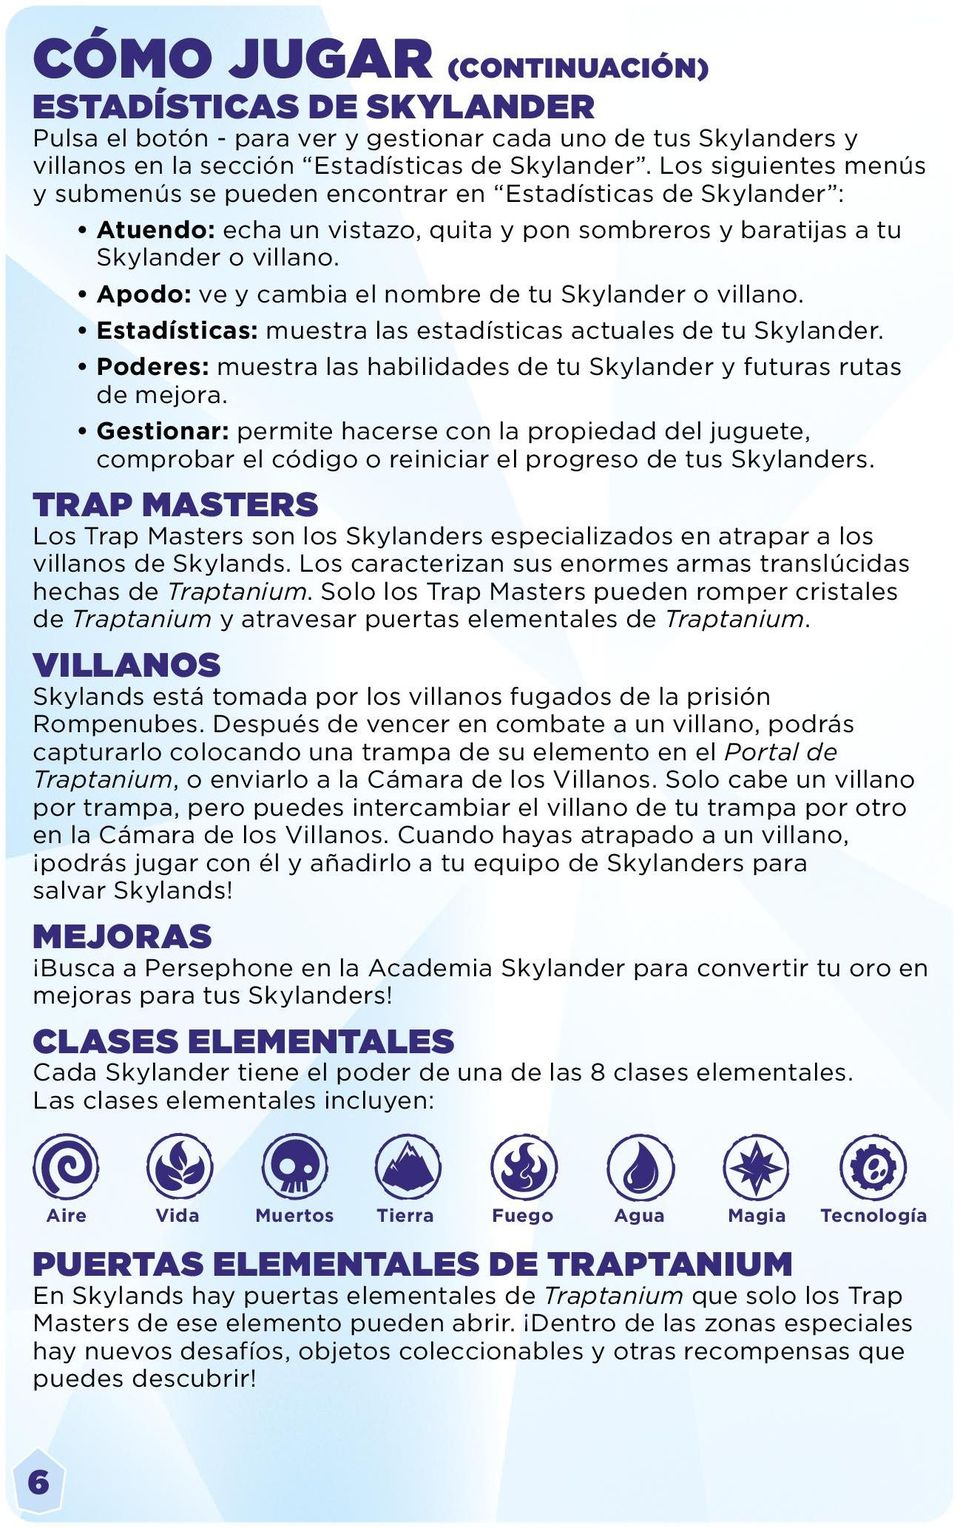 Apodo: ve y cambia el nombre de tu Skylander o villano. Estadísticas: muestra las estadísticas actuales de tu Skylander. Poderes: muestra las habilidades de tu Skylander y futuras rutas de mejora.